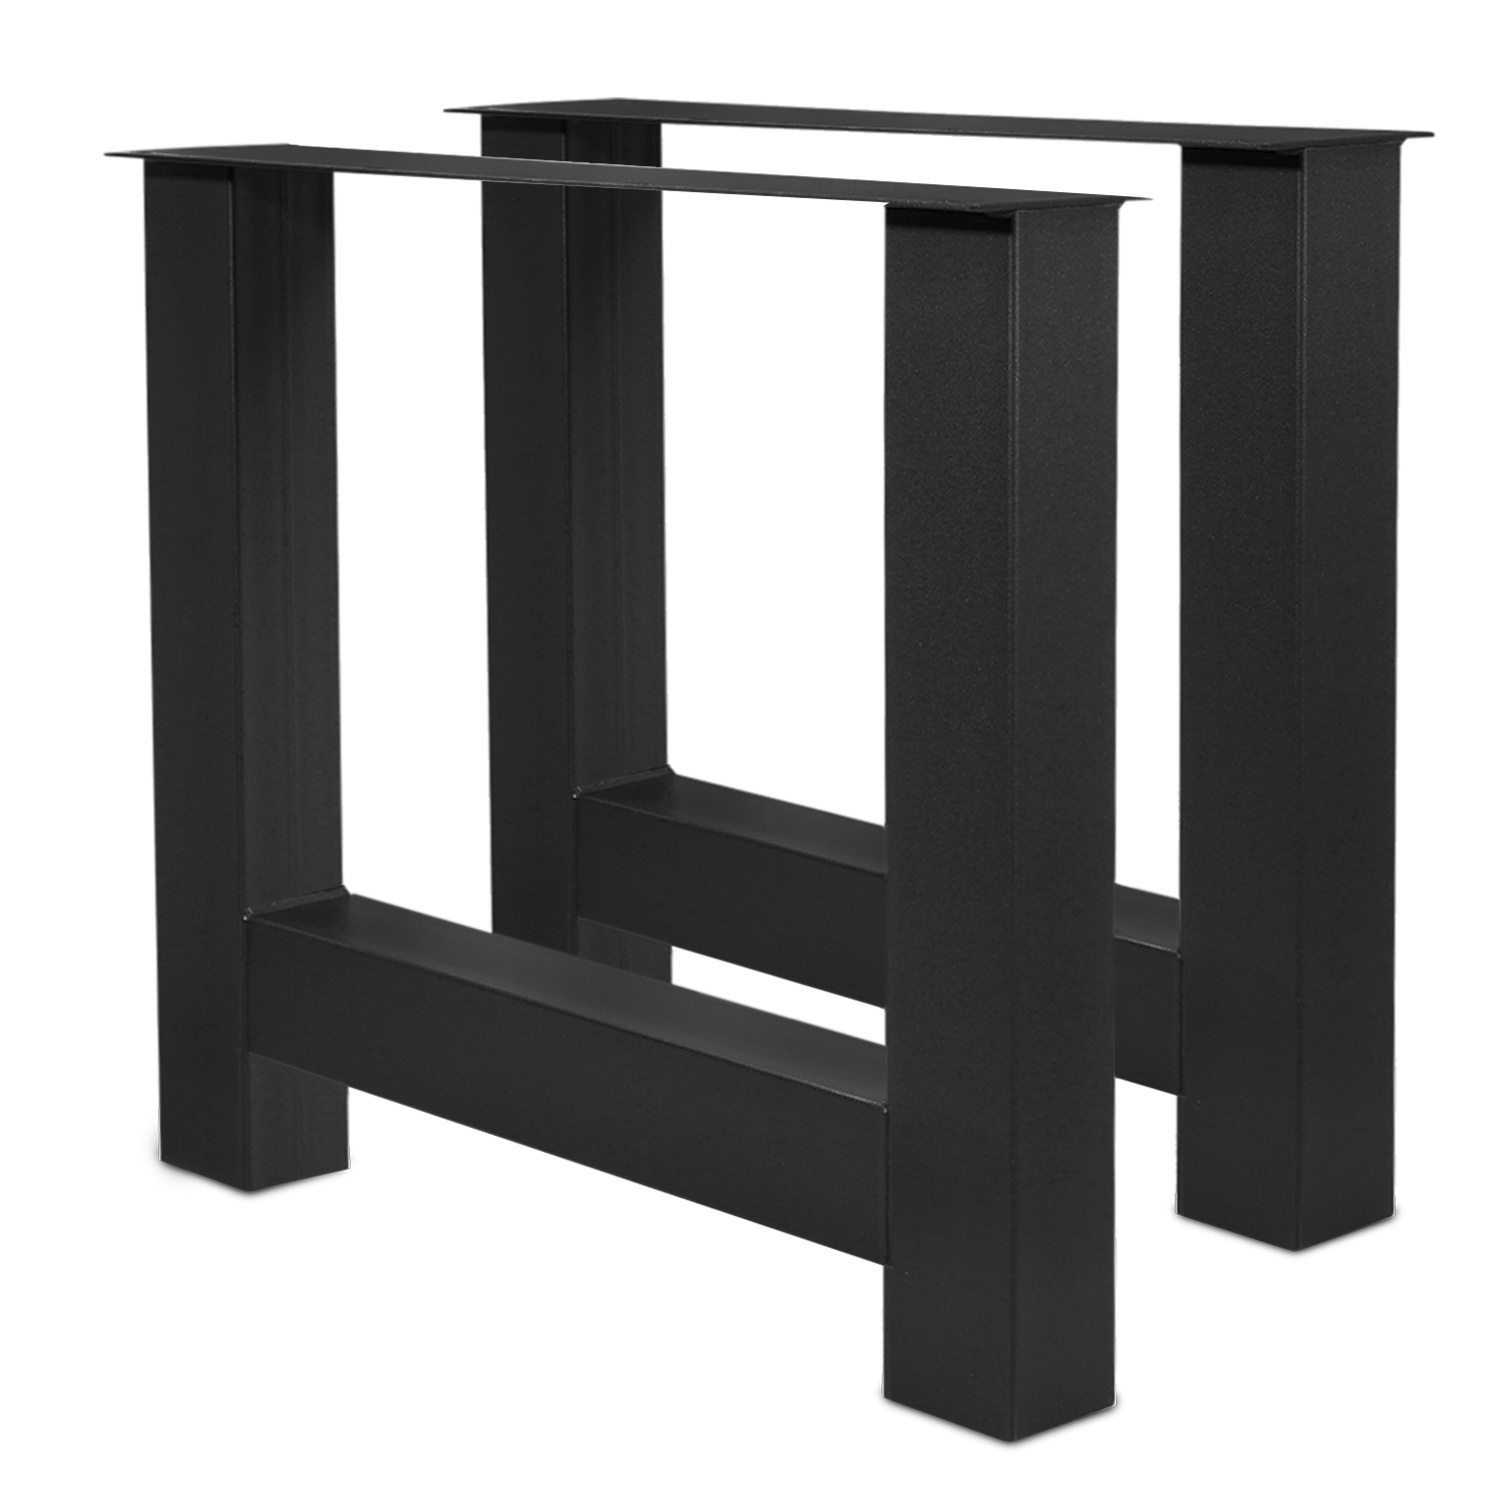  Tischbeine H Metall SET (2 Stück) - 10x10 cm - 78 cm breit - 72 cm hoch - H-form Tischkufen / Tischgestell beschichtet - Schwarz